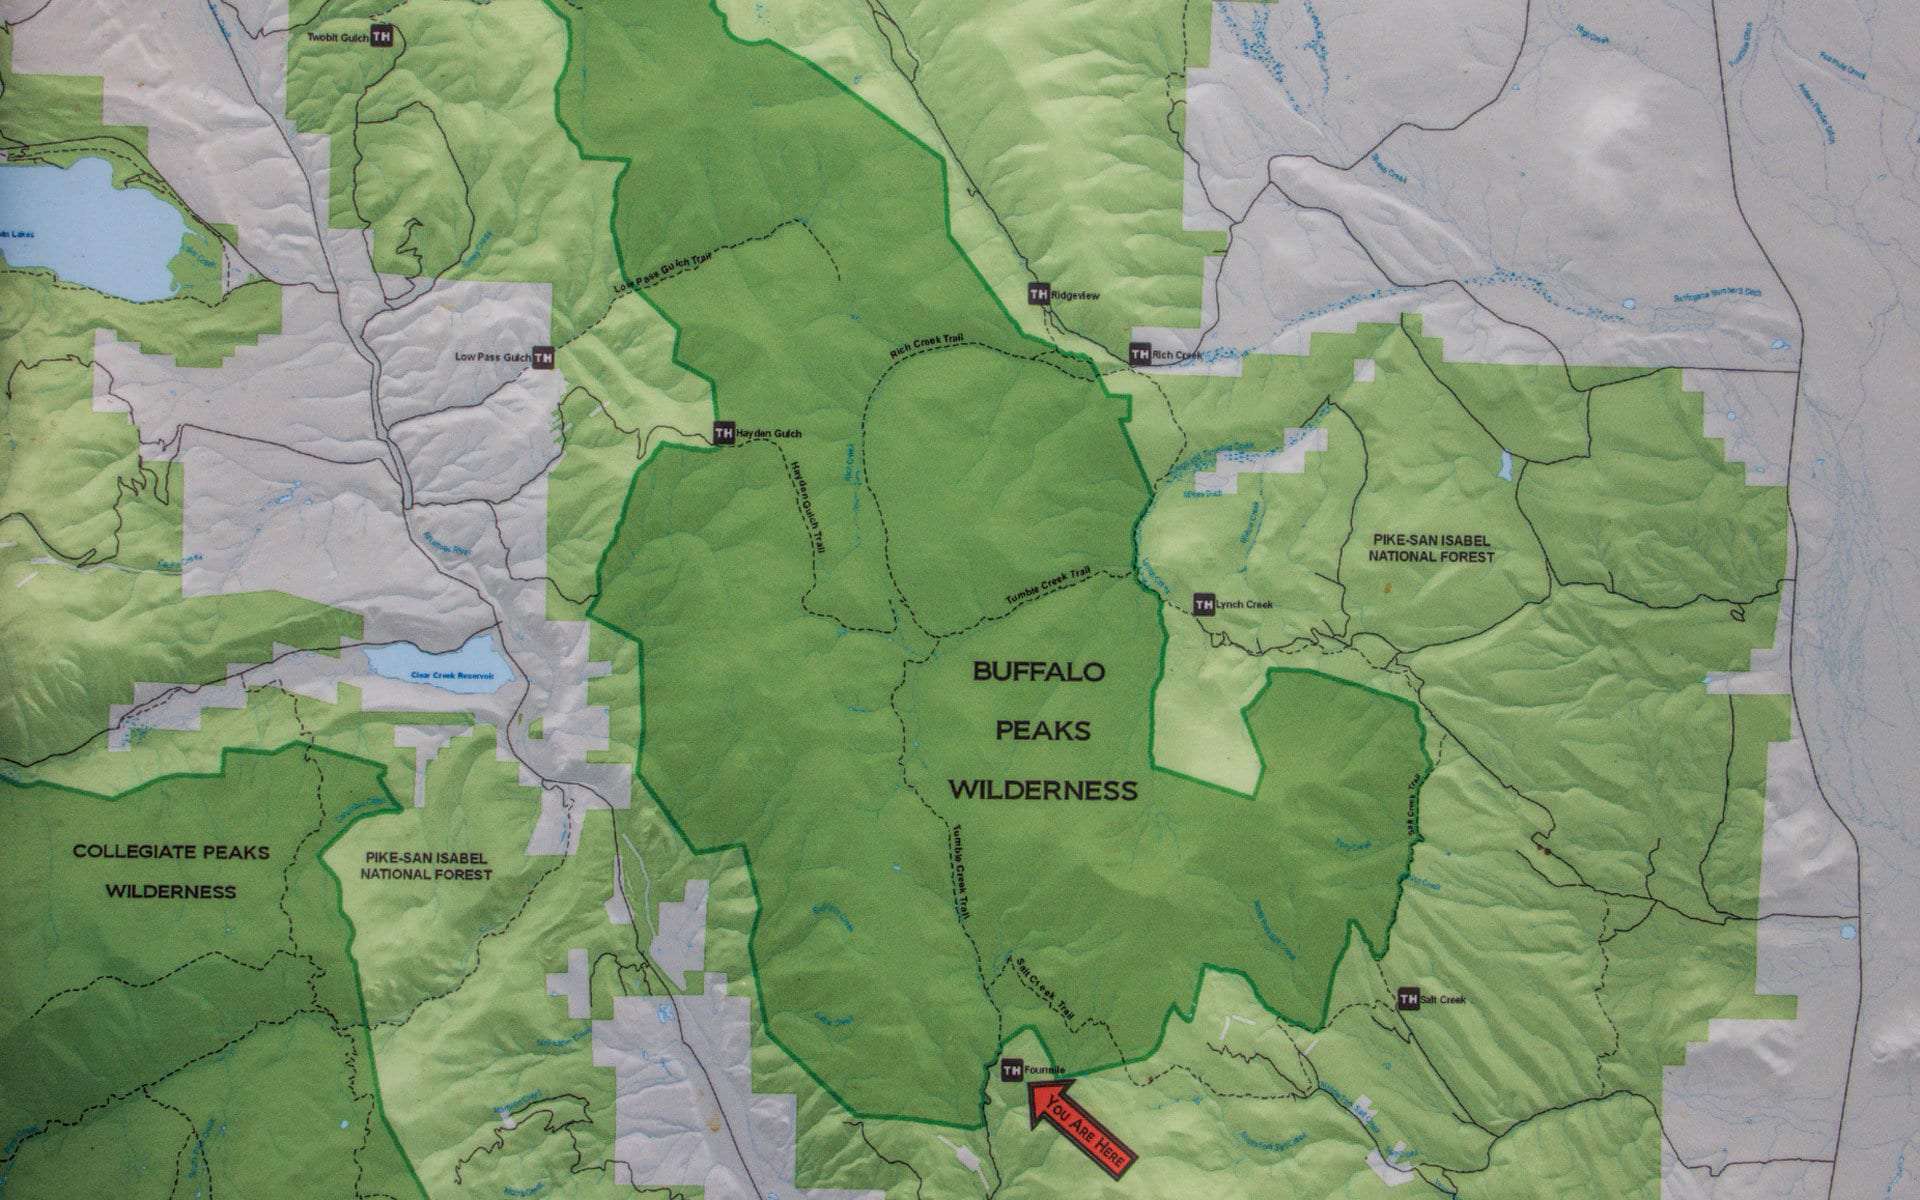 Buffalo Peaks Wilderness trail map